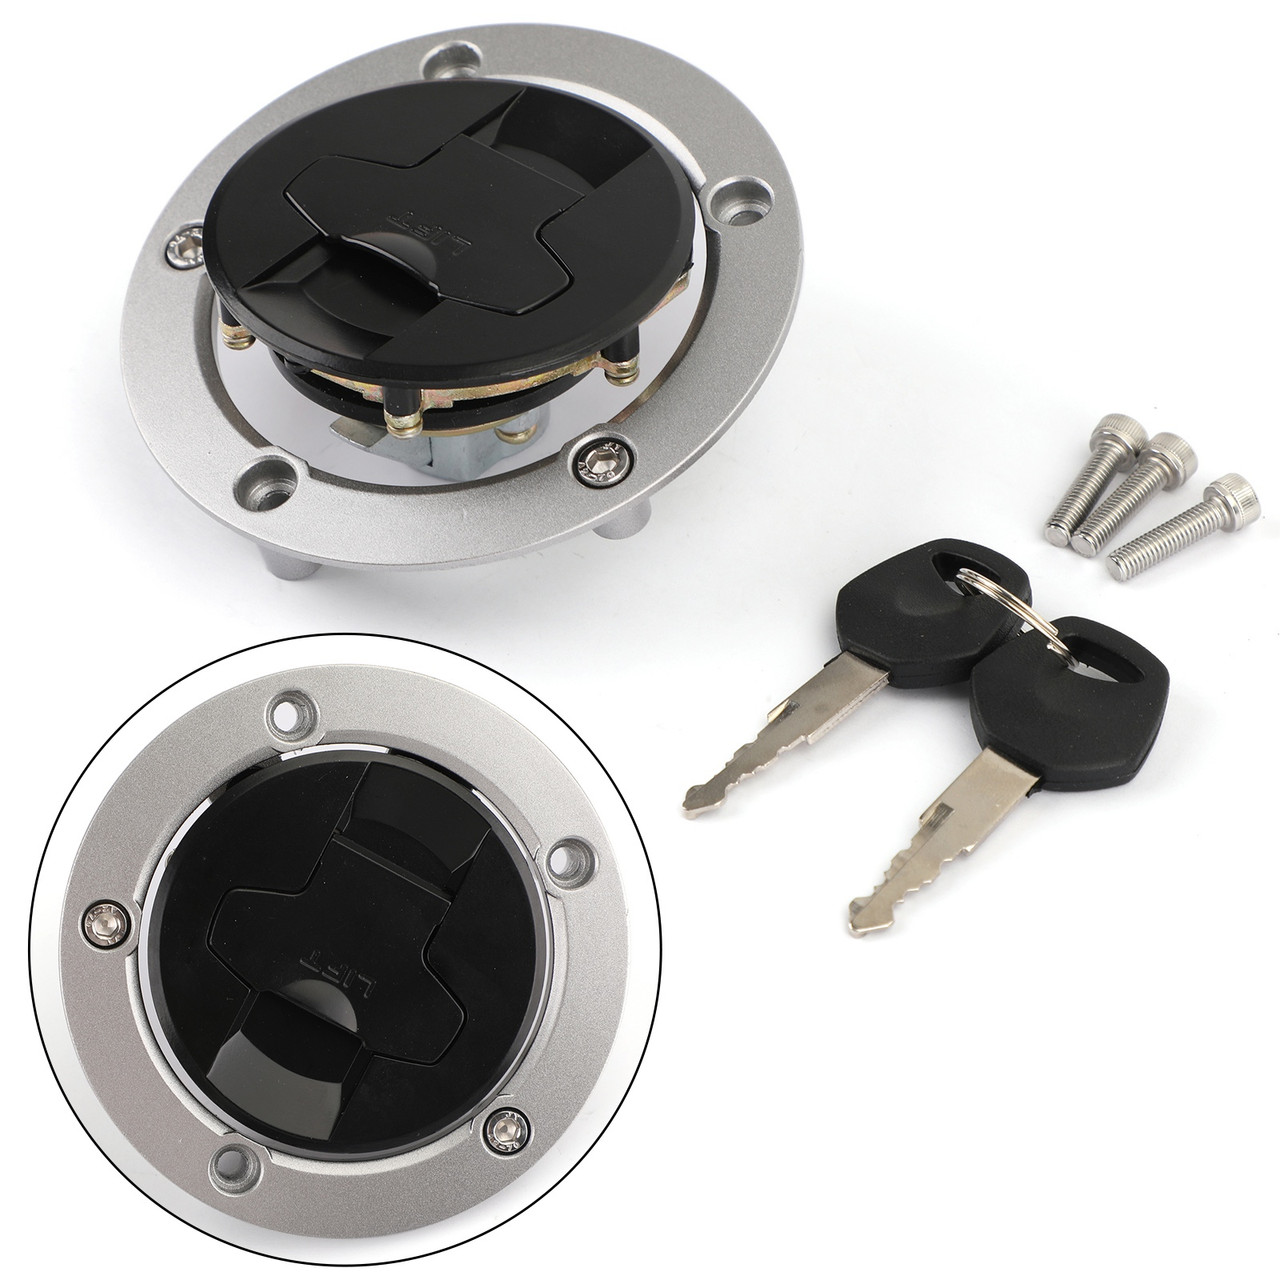 Ignition Switch Lock & Keys Kit Fit for Kawasaki ZX1000 ZX636 Ninja 11-18 ER650 ER6N EX650 Ninja 650 12-16